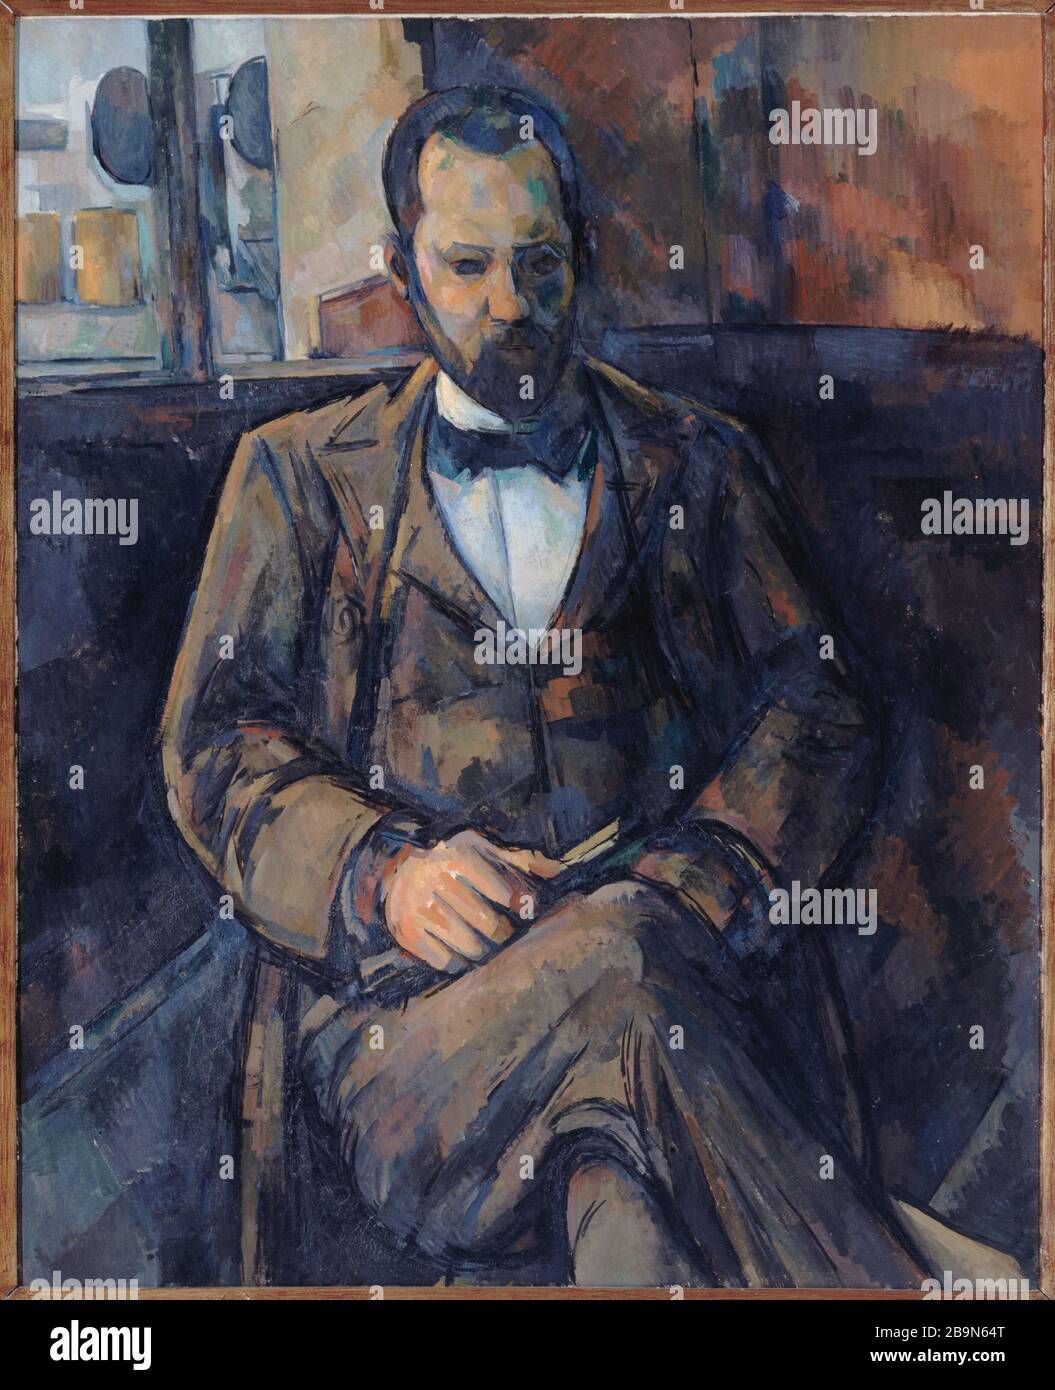 P. CEZANNE - AMBROISE VOLLARD Paul Cézanne (1839-1906). "Ambroise Vollard", 1899 (avantgardistische Restauration). Musée des Beaux-Arts de la Ville de Paris, Petit Palais. Stockfoto